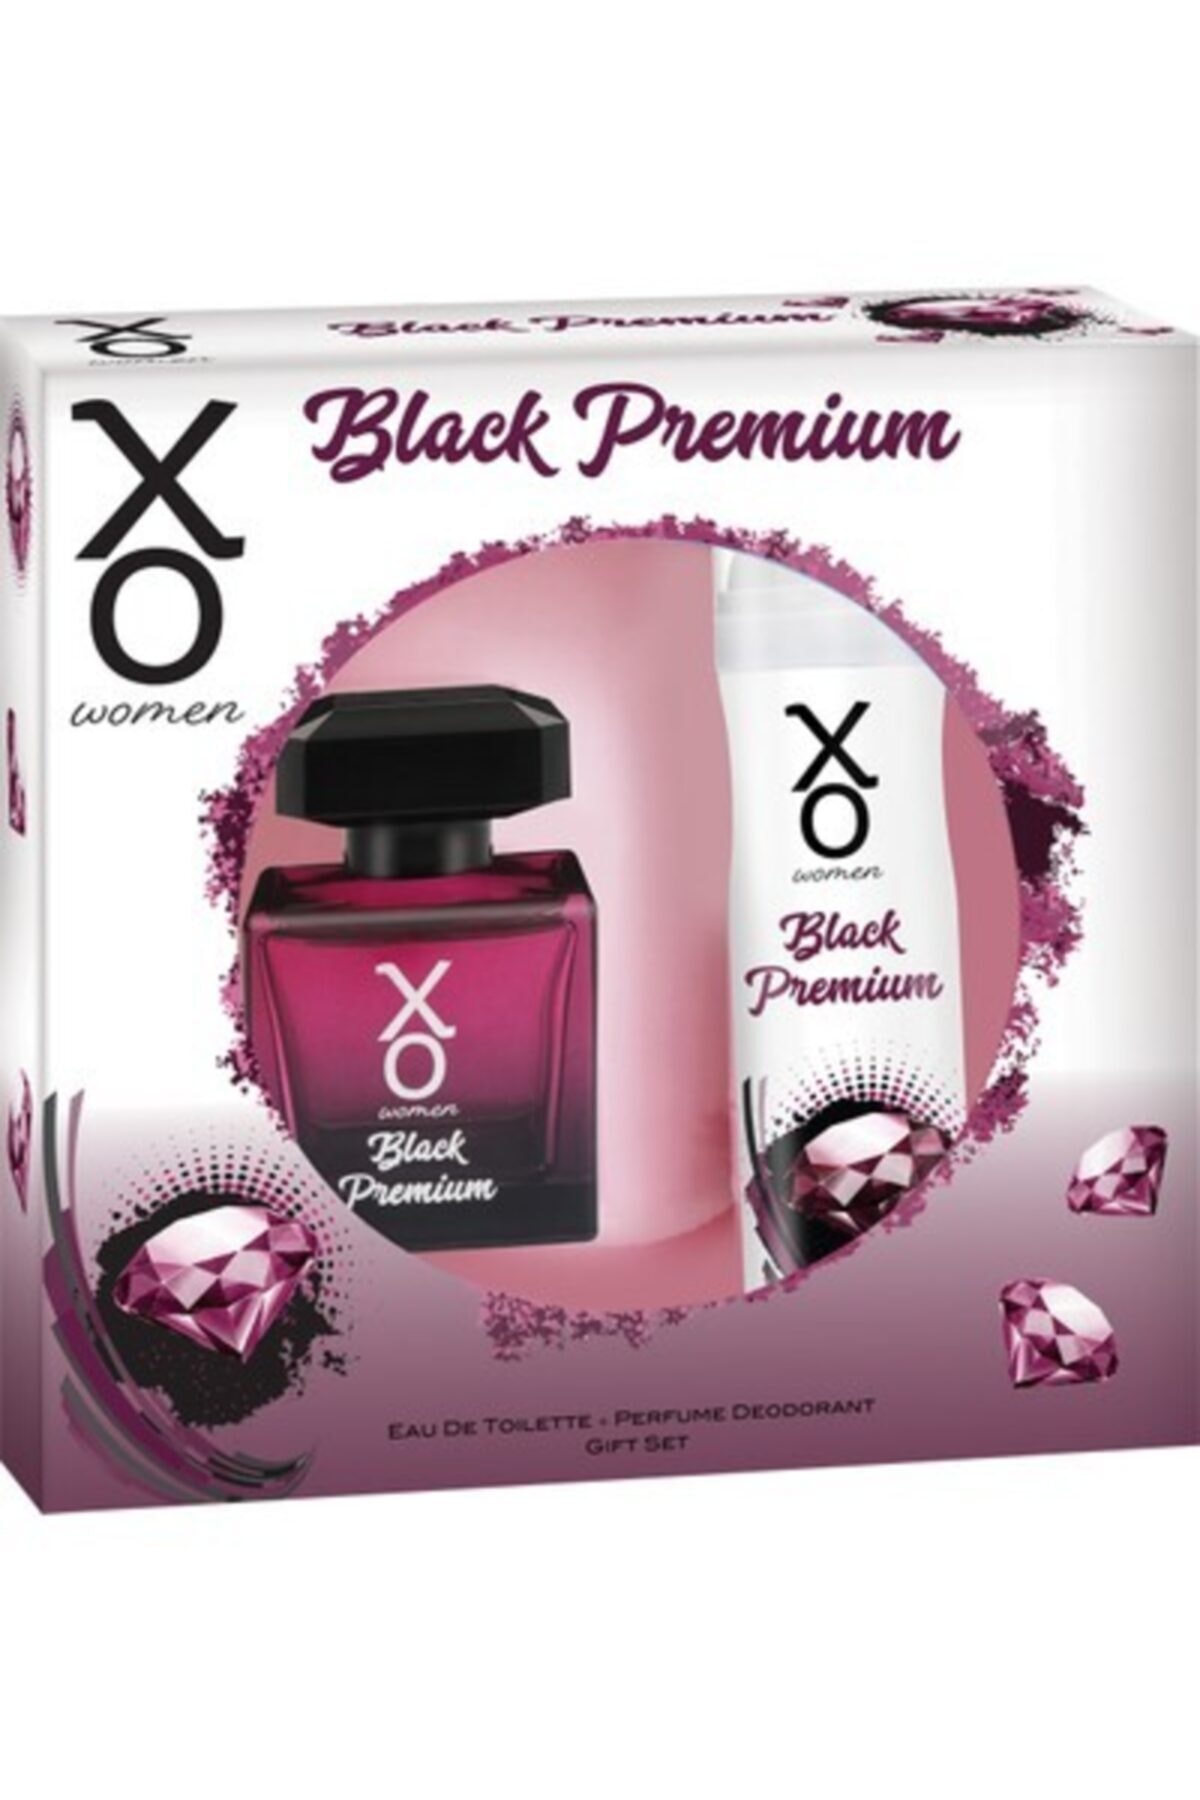 Xo Orıjınal Black Premıum Kadın Parfüm Seti 100 ml Edt + 125 ml Deodorant Ikili Set